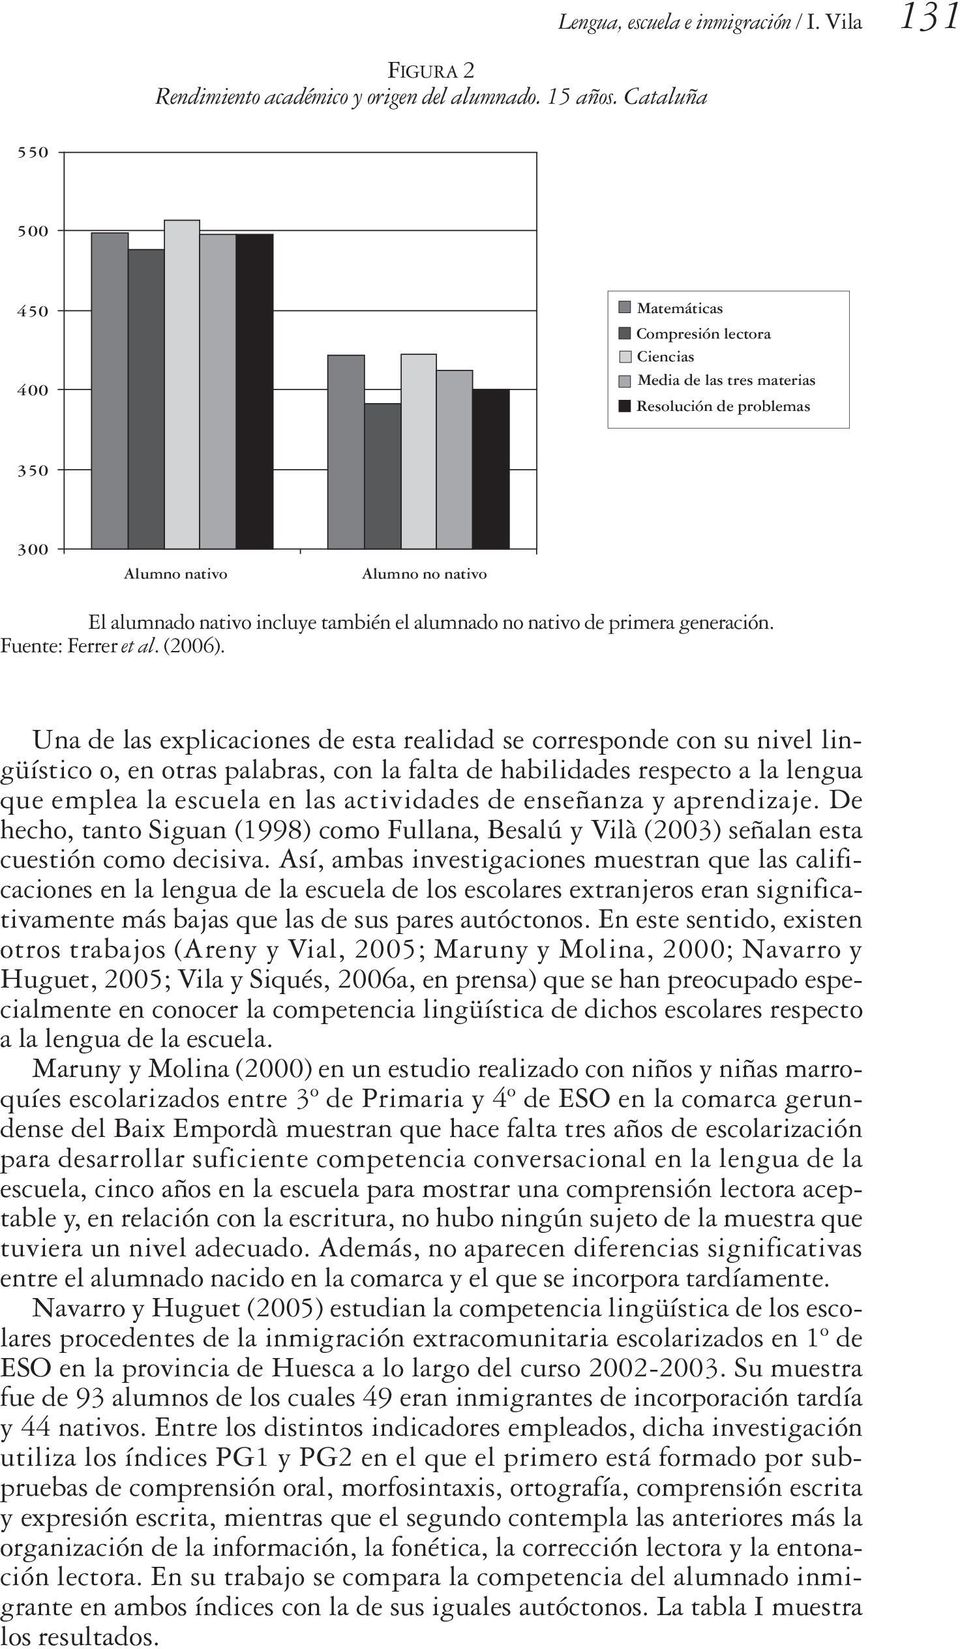 alumnado no nativo de primera generación. Fuente: Ferrer et al. (2006).